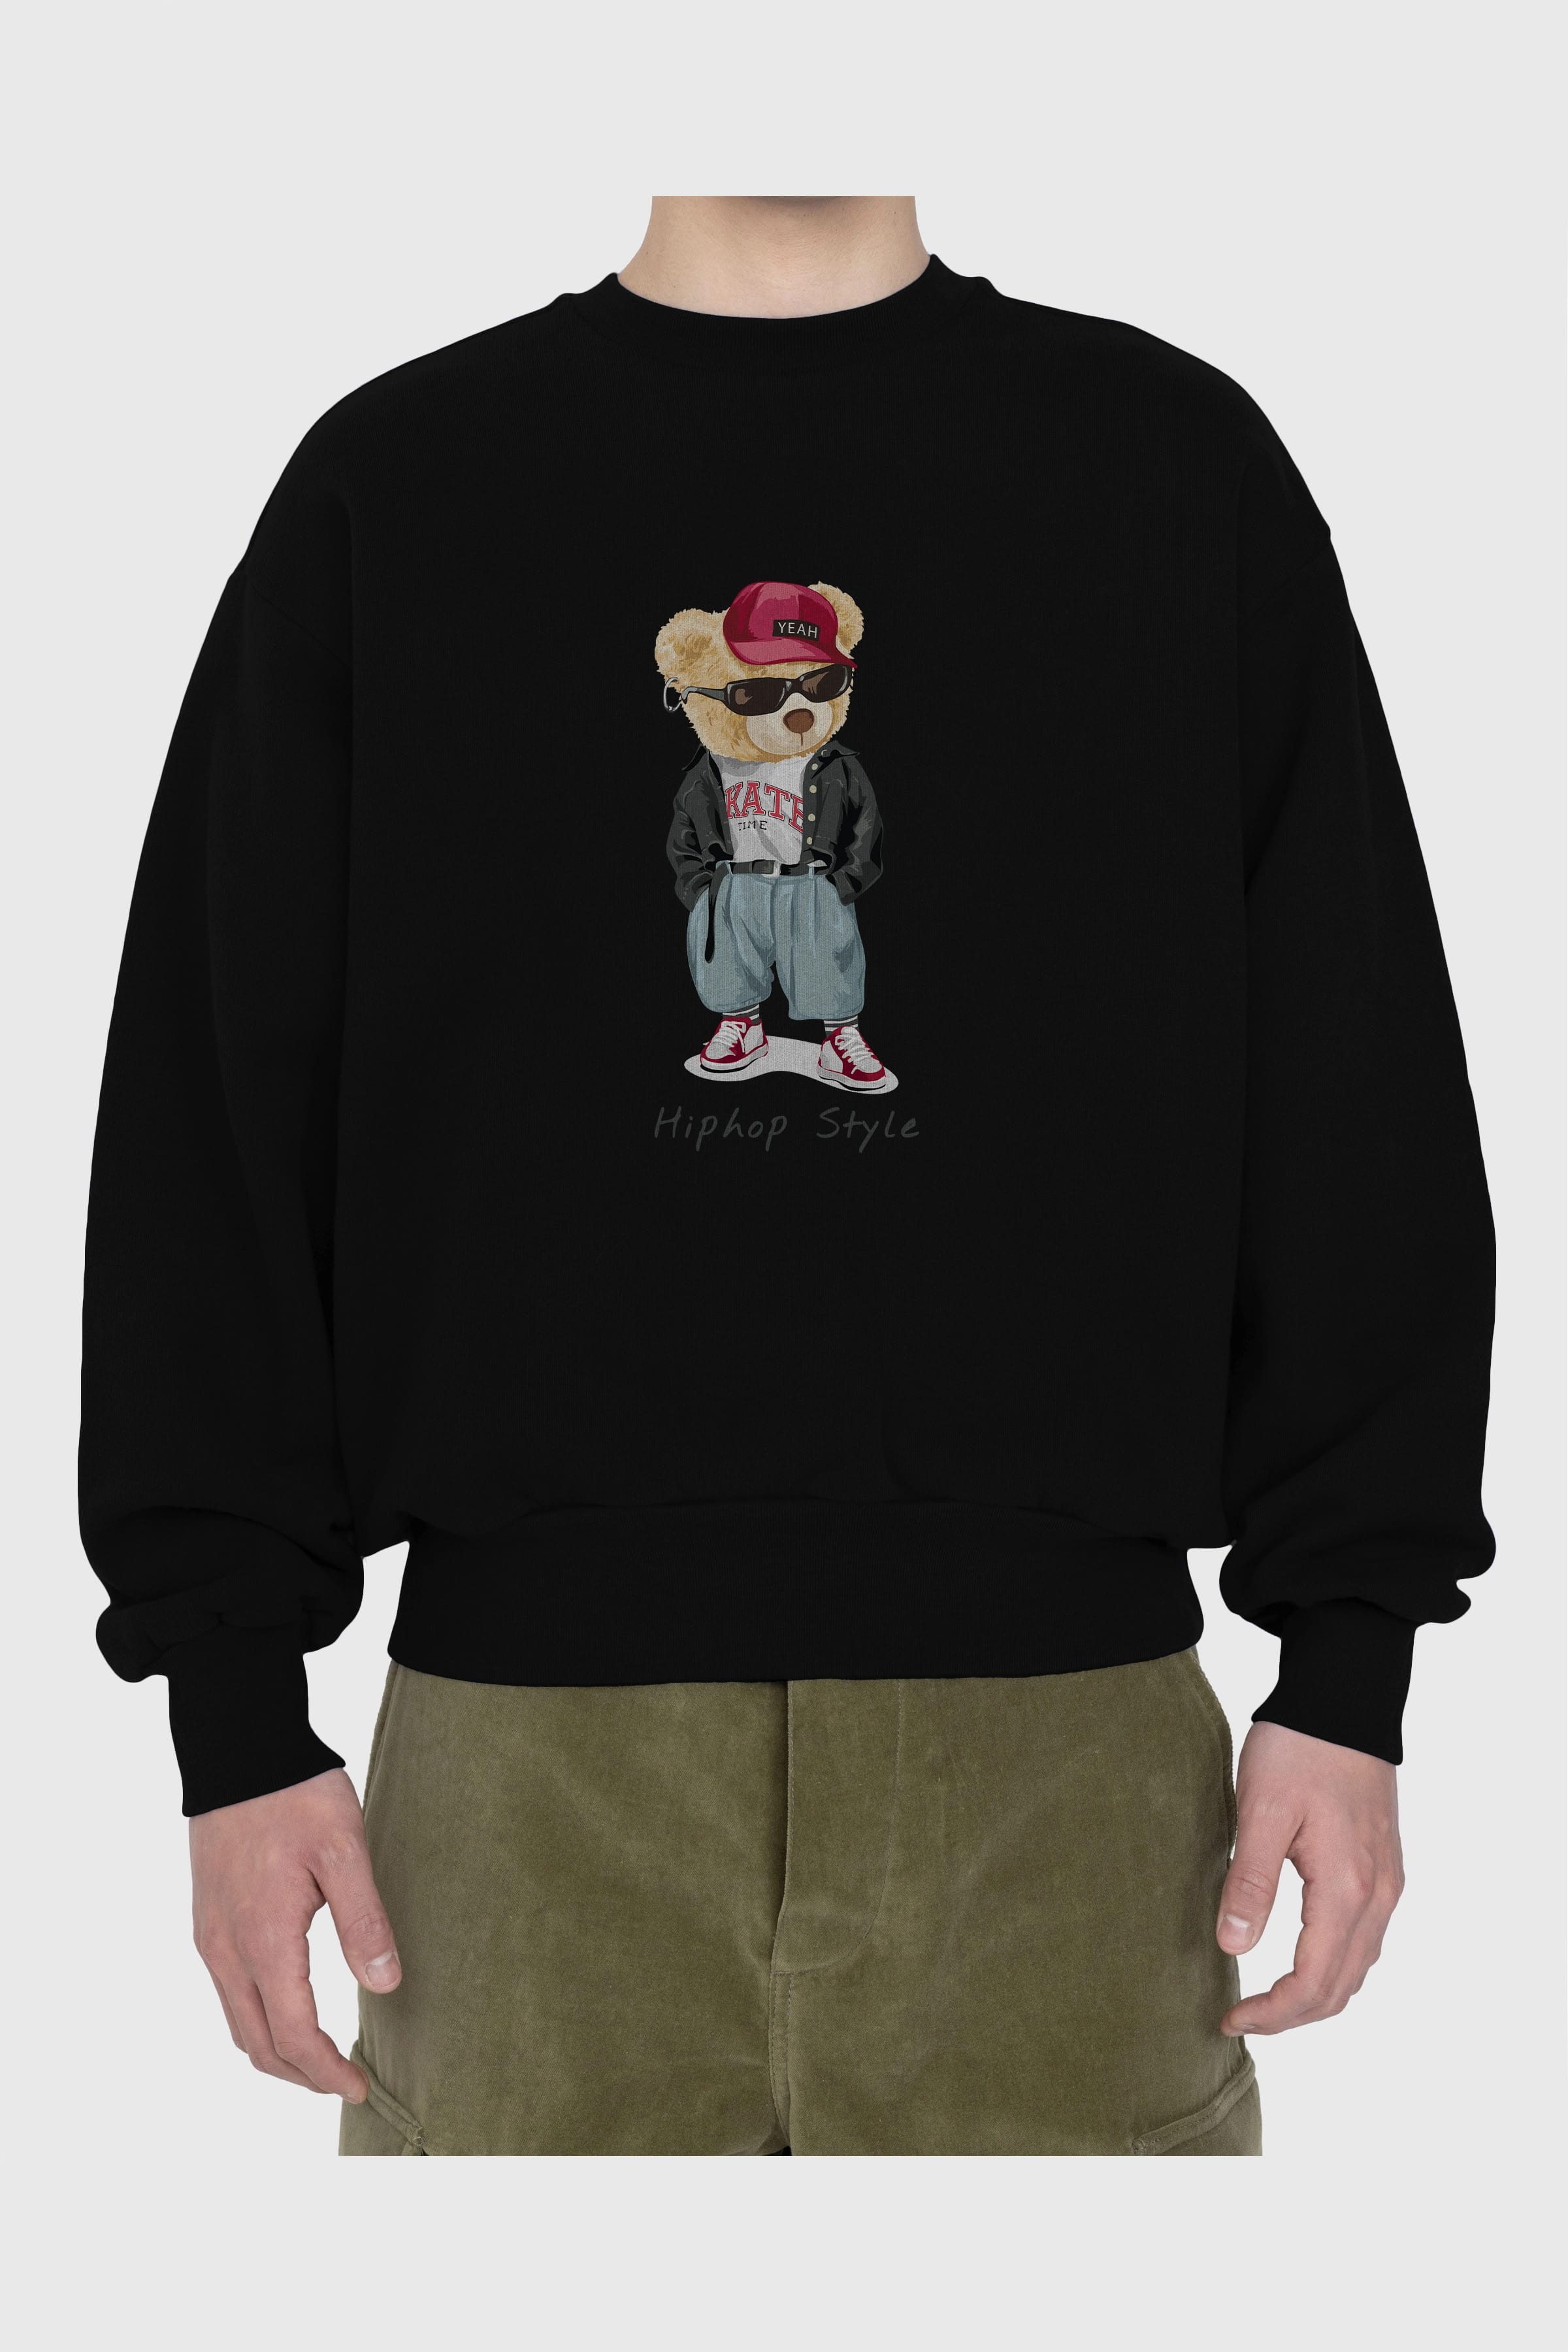 Teddy Bear Hiphop Style Ön Baskılı Oversize Sweatshirt Erkek Kadın Unisex